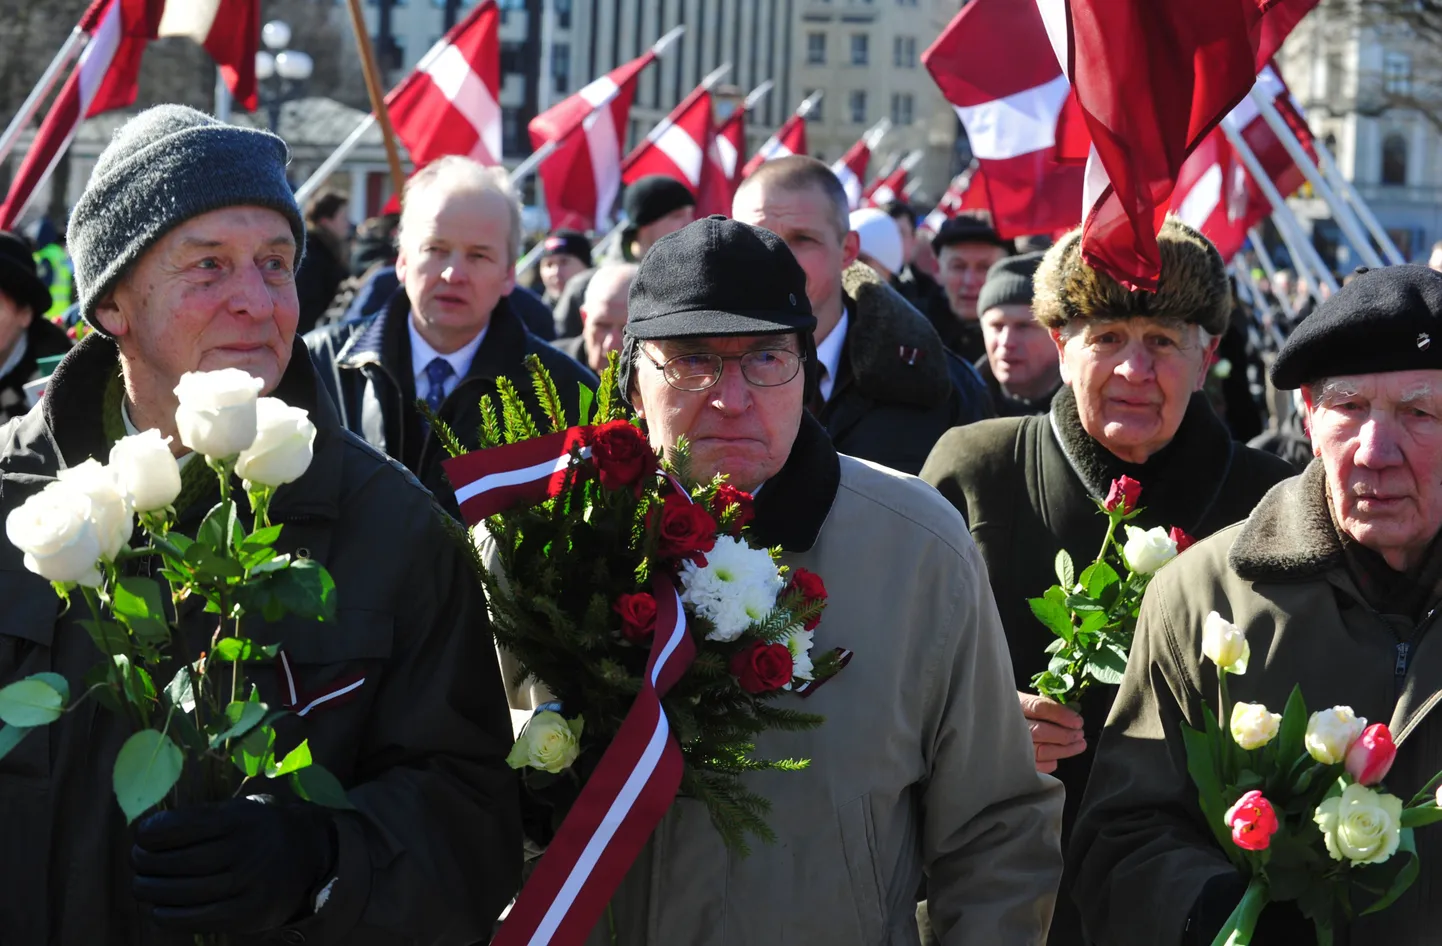 Шествие бывших легионеров SS в Латвии 16 марта 2013 года.